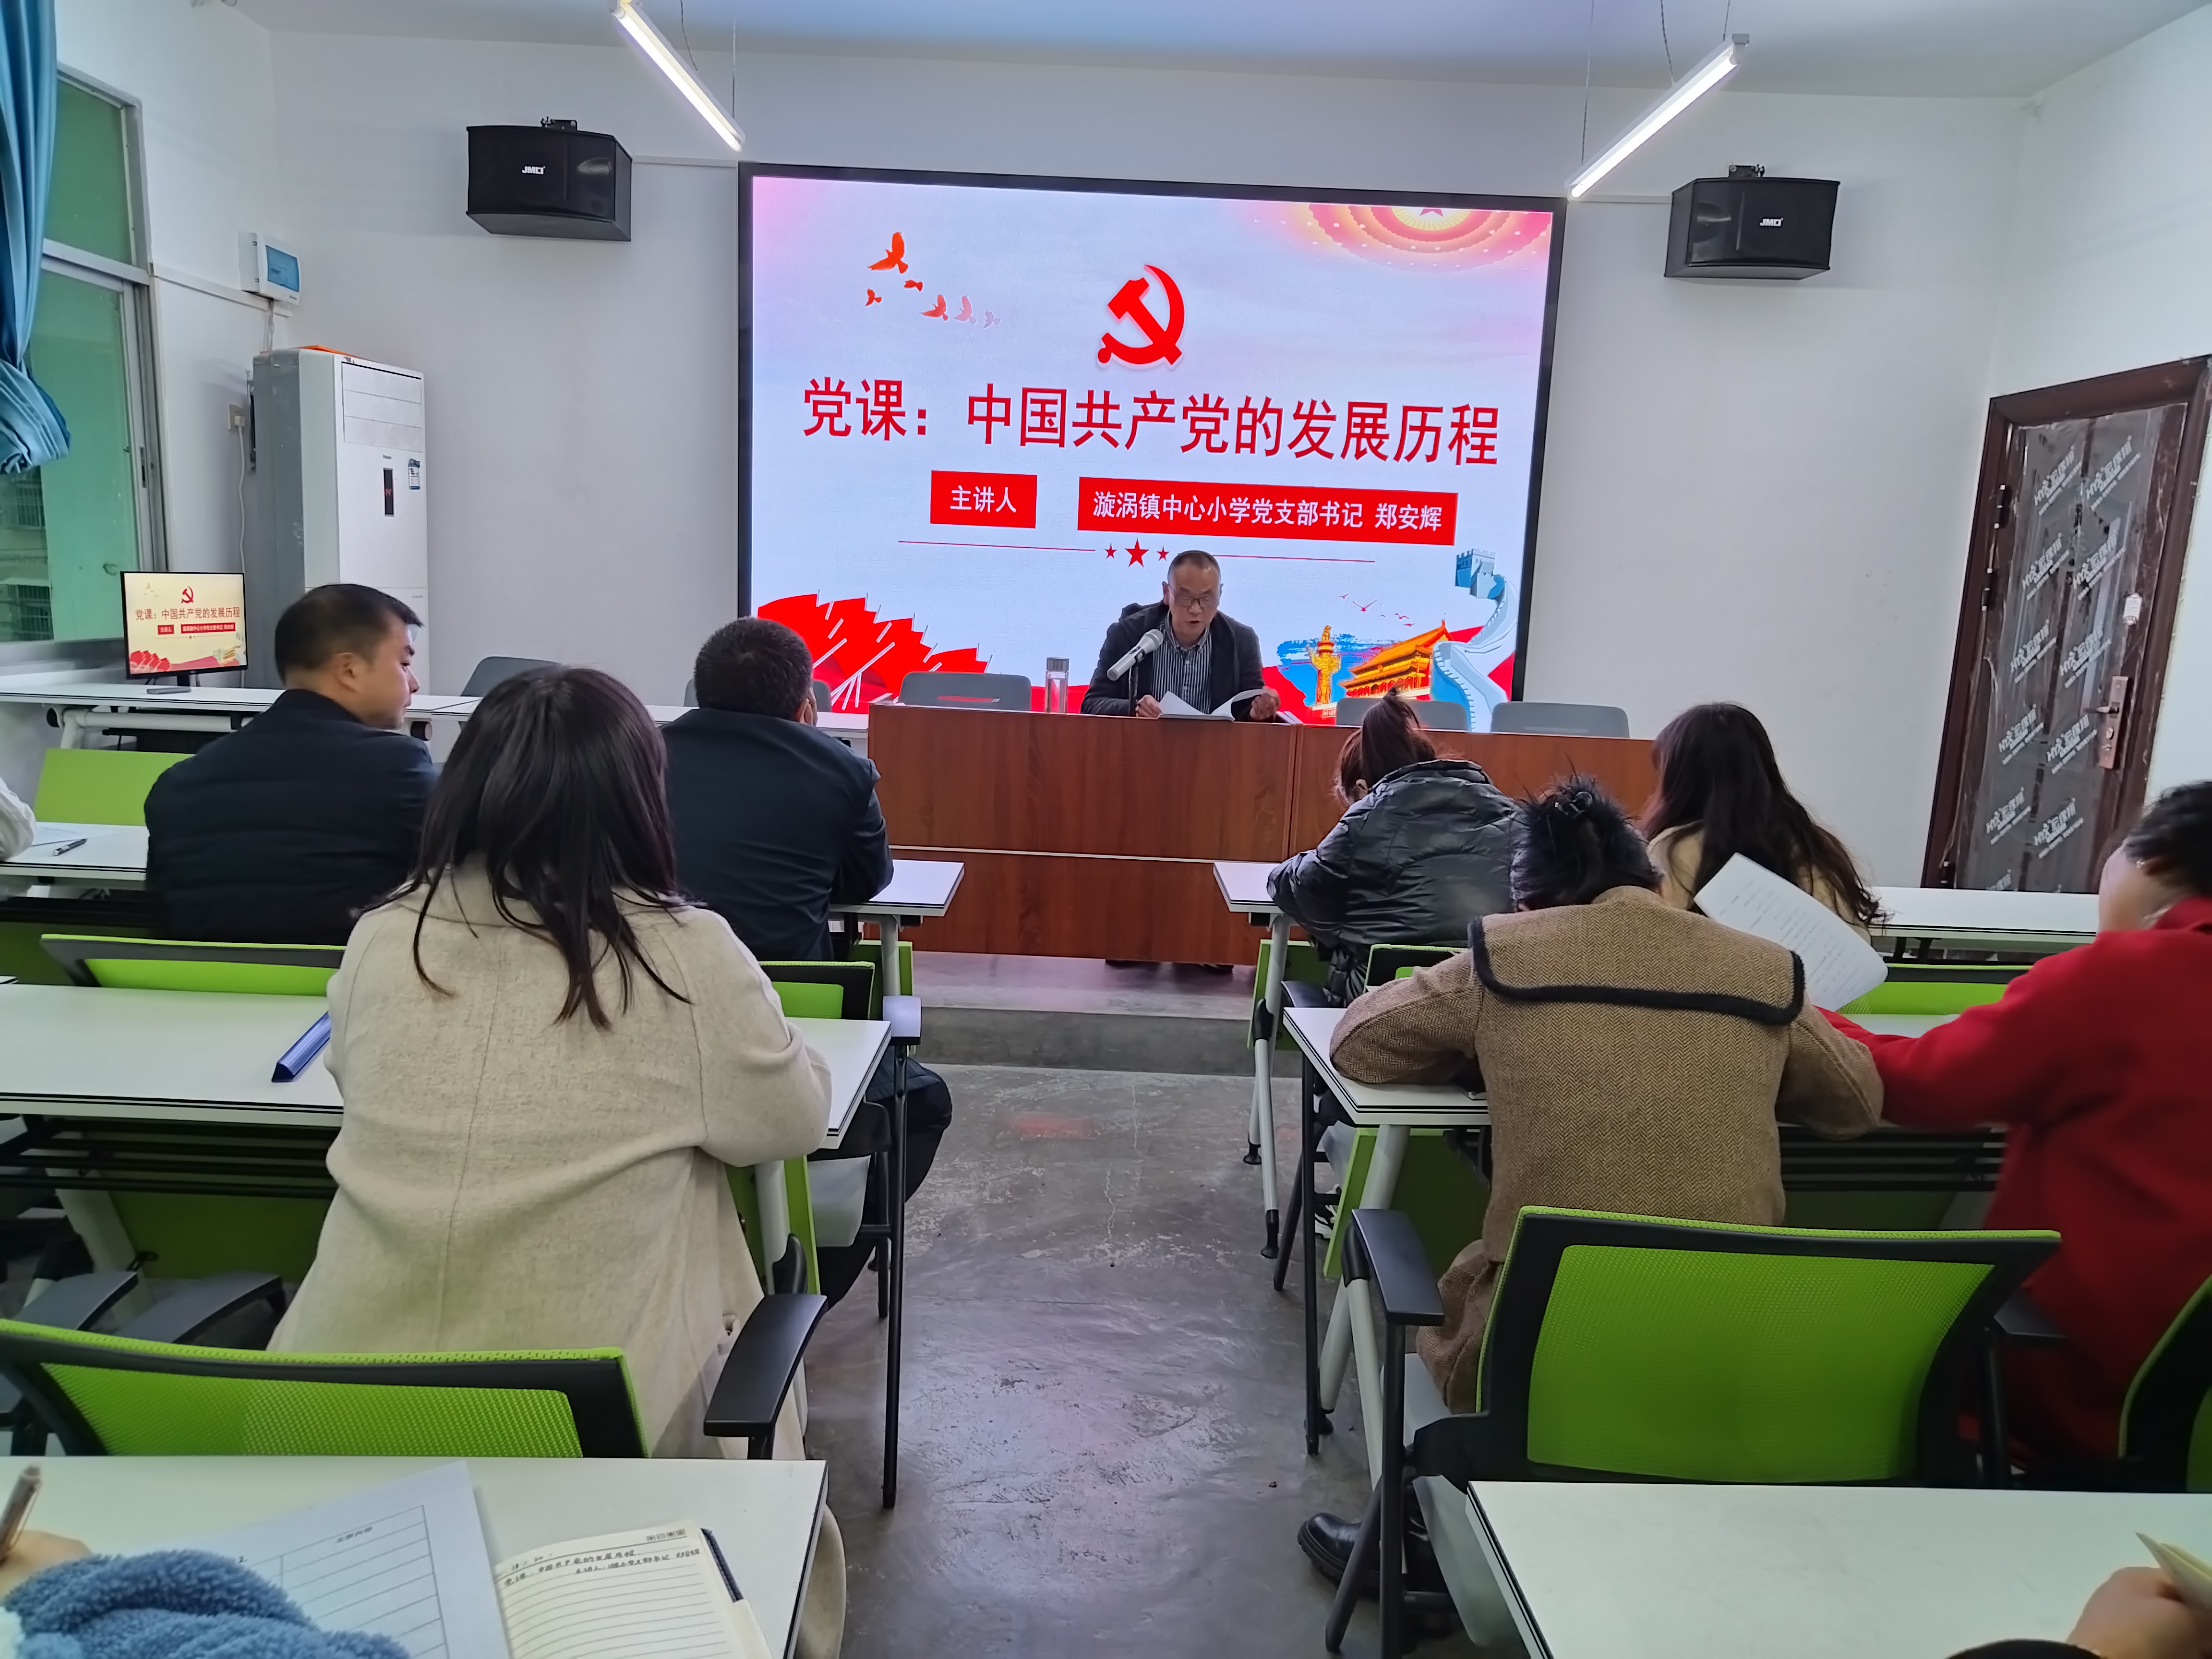 汉阴县漩涡镇中心小学党支部开展书记讲党课活动